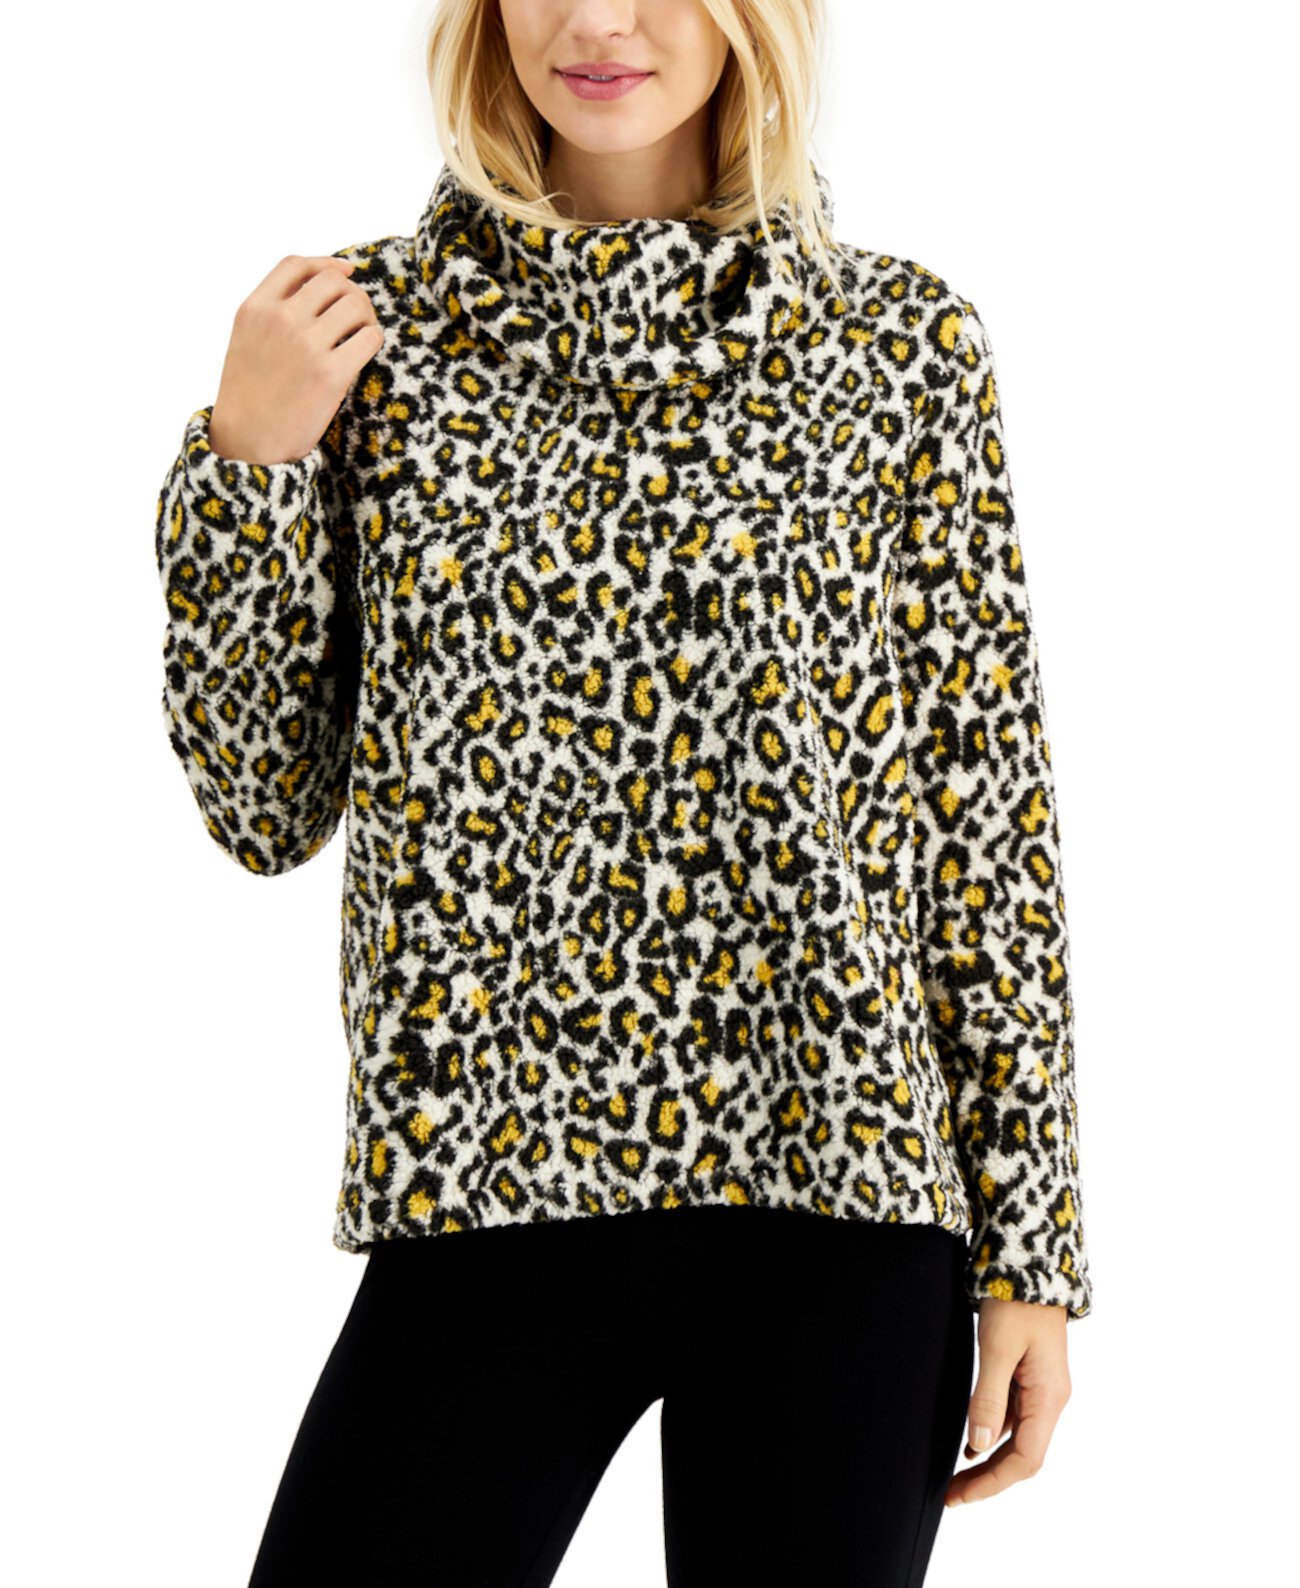 Купить Блузки Пуловер с воротником-хомутом, созданный для Macy's Style ...